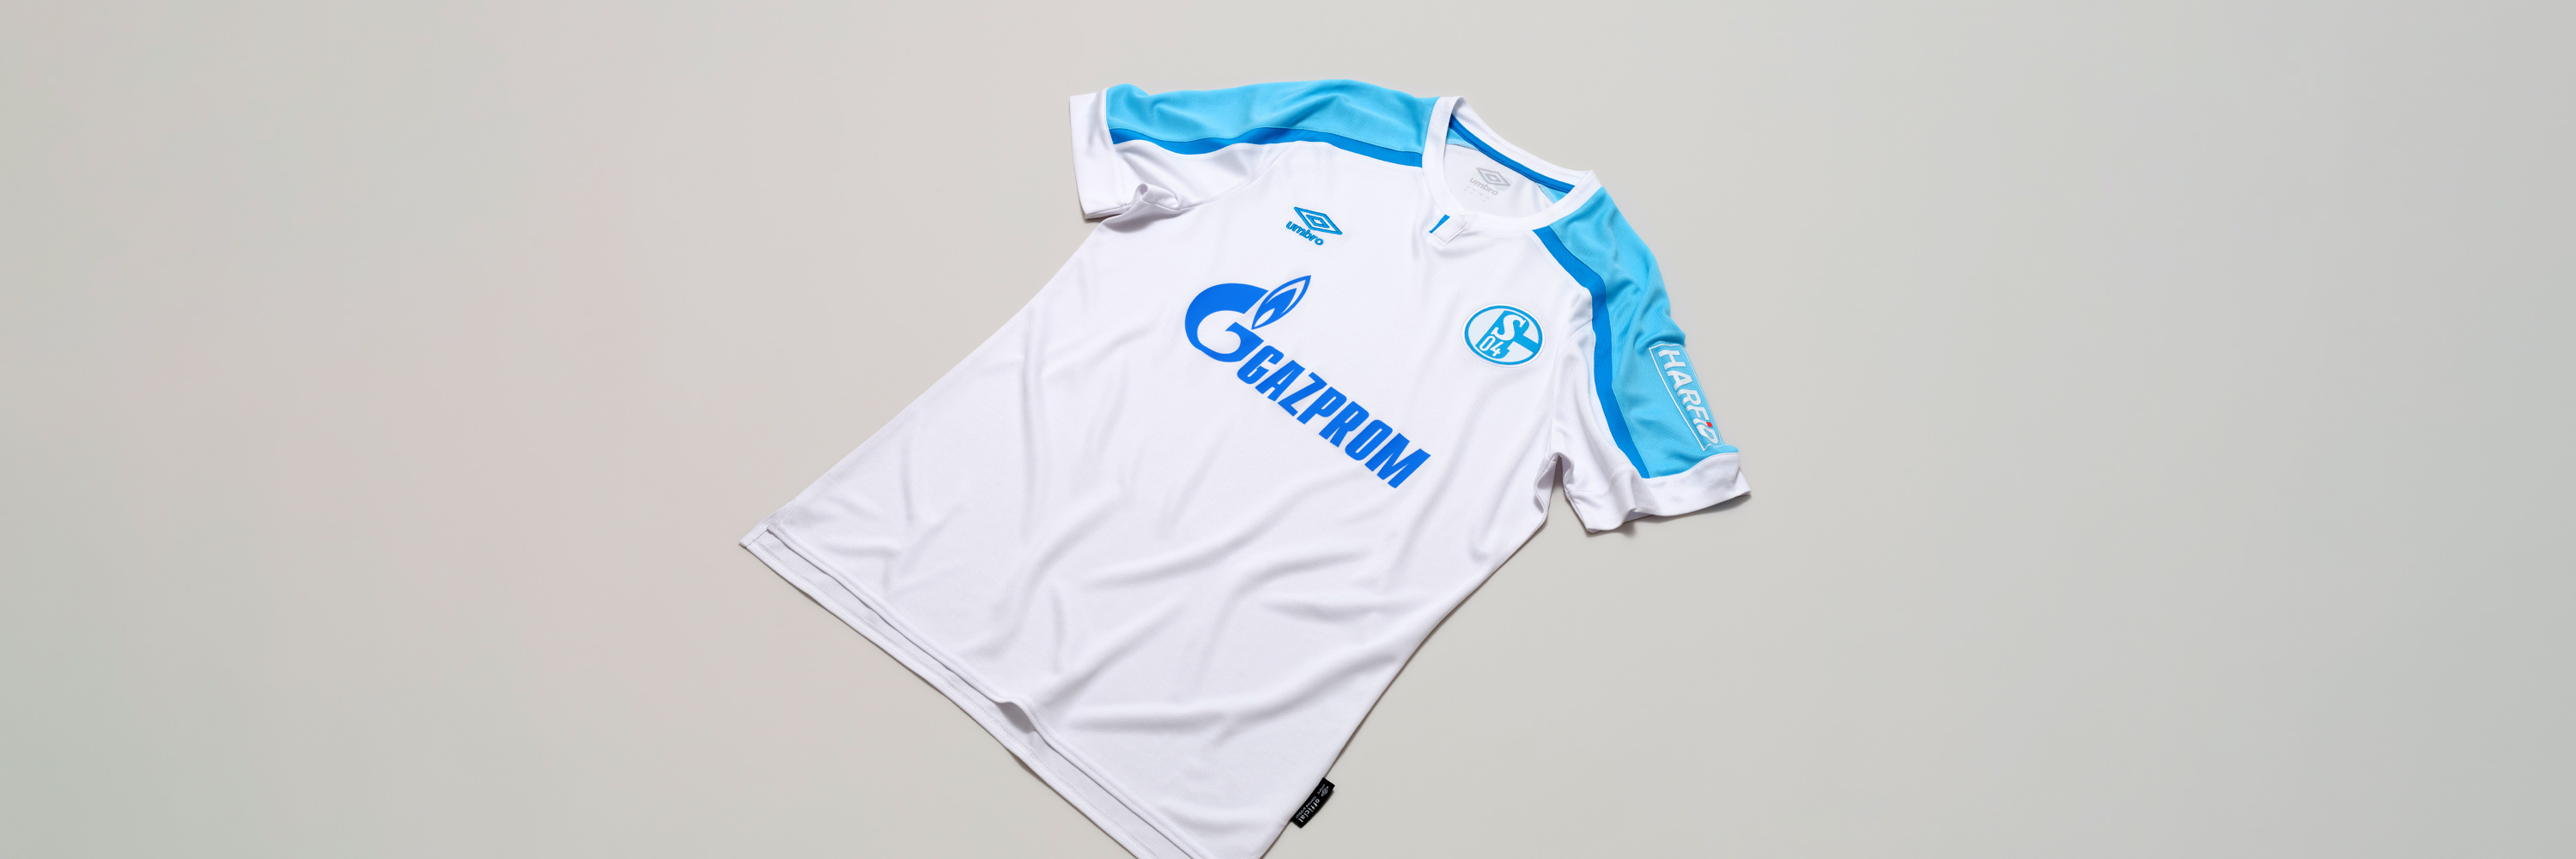 Umbro Schalke 04 Warm Up Jersey 21 22 weiß S04 Fußballtrikot Fan Shirt S-3XL 